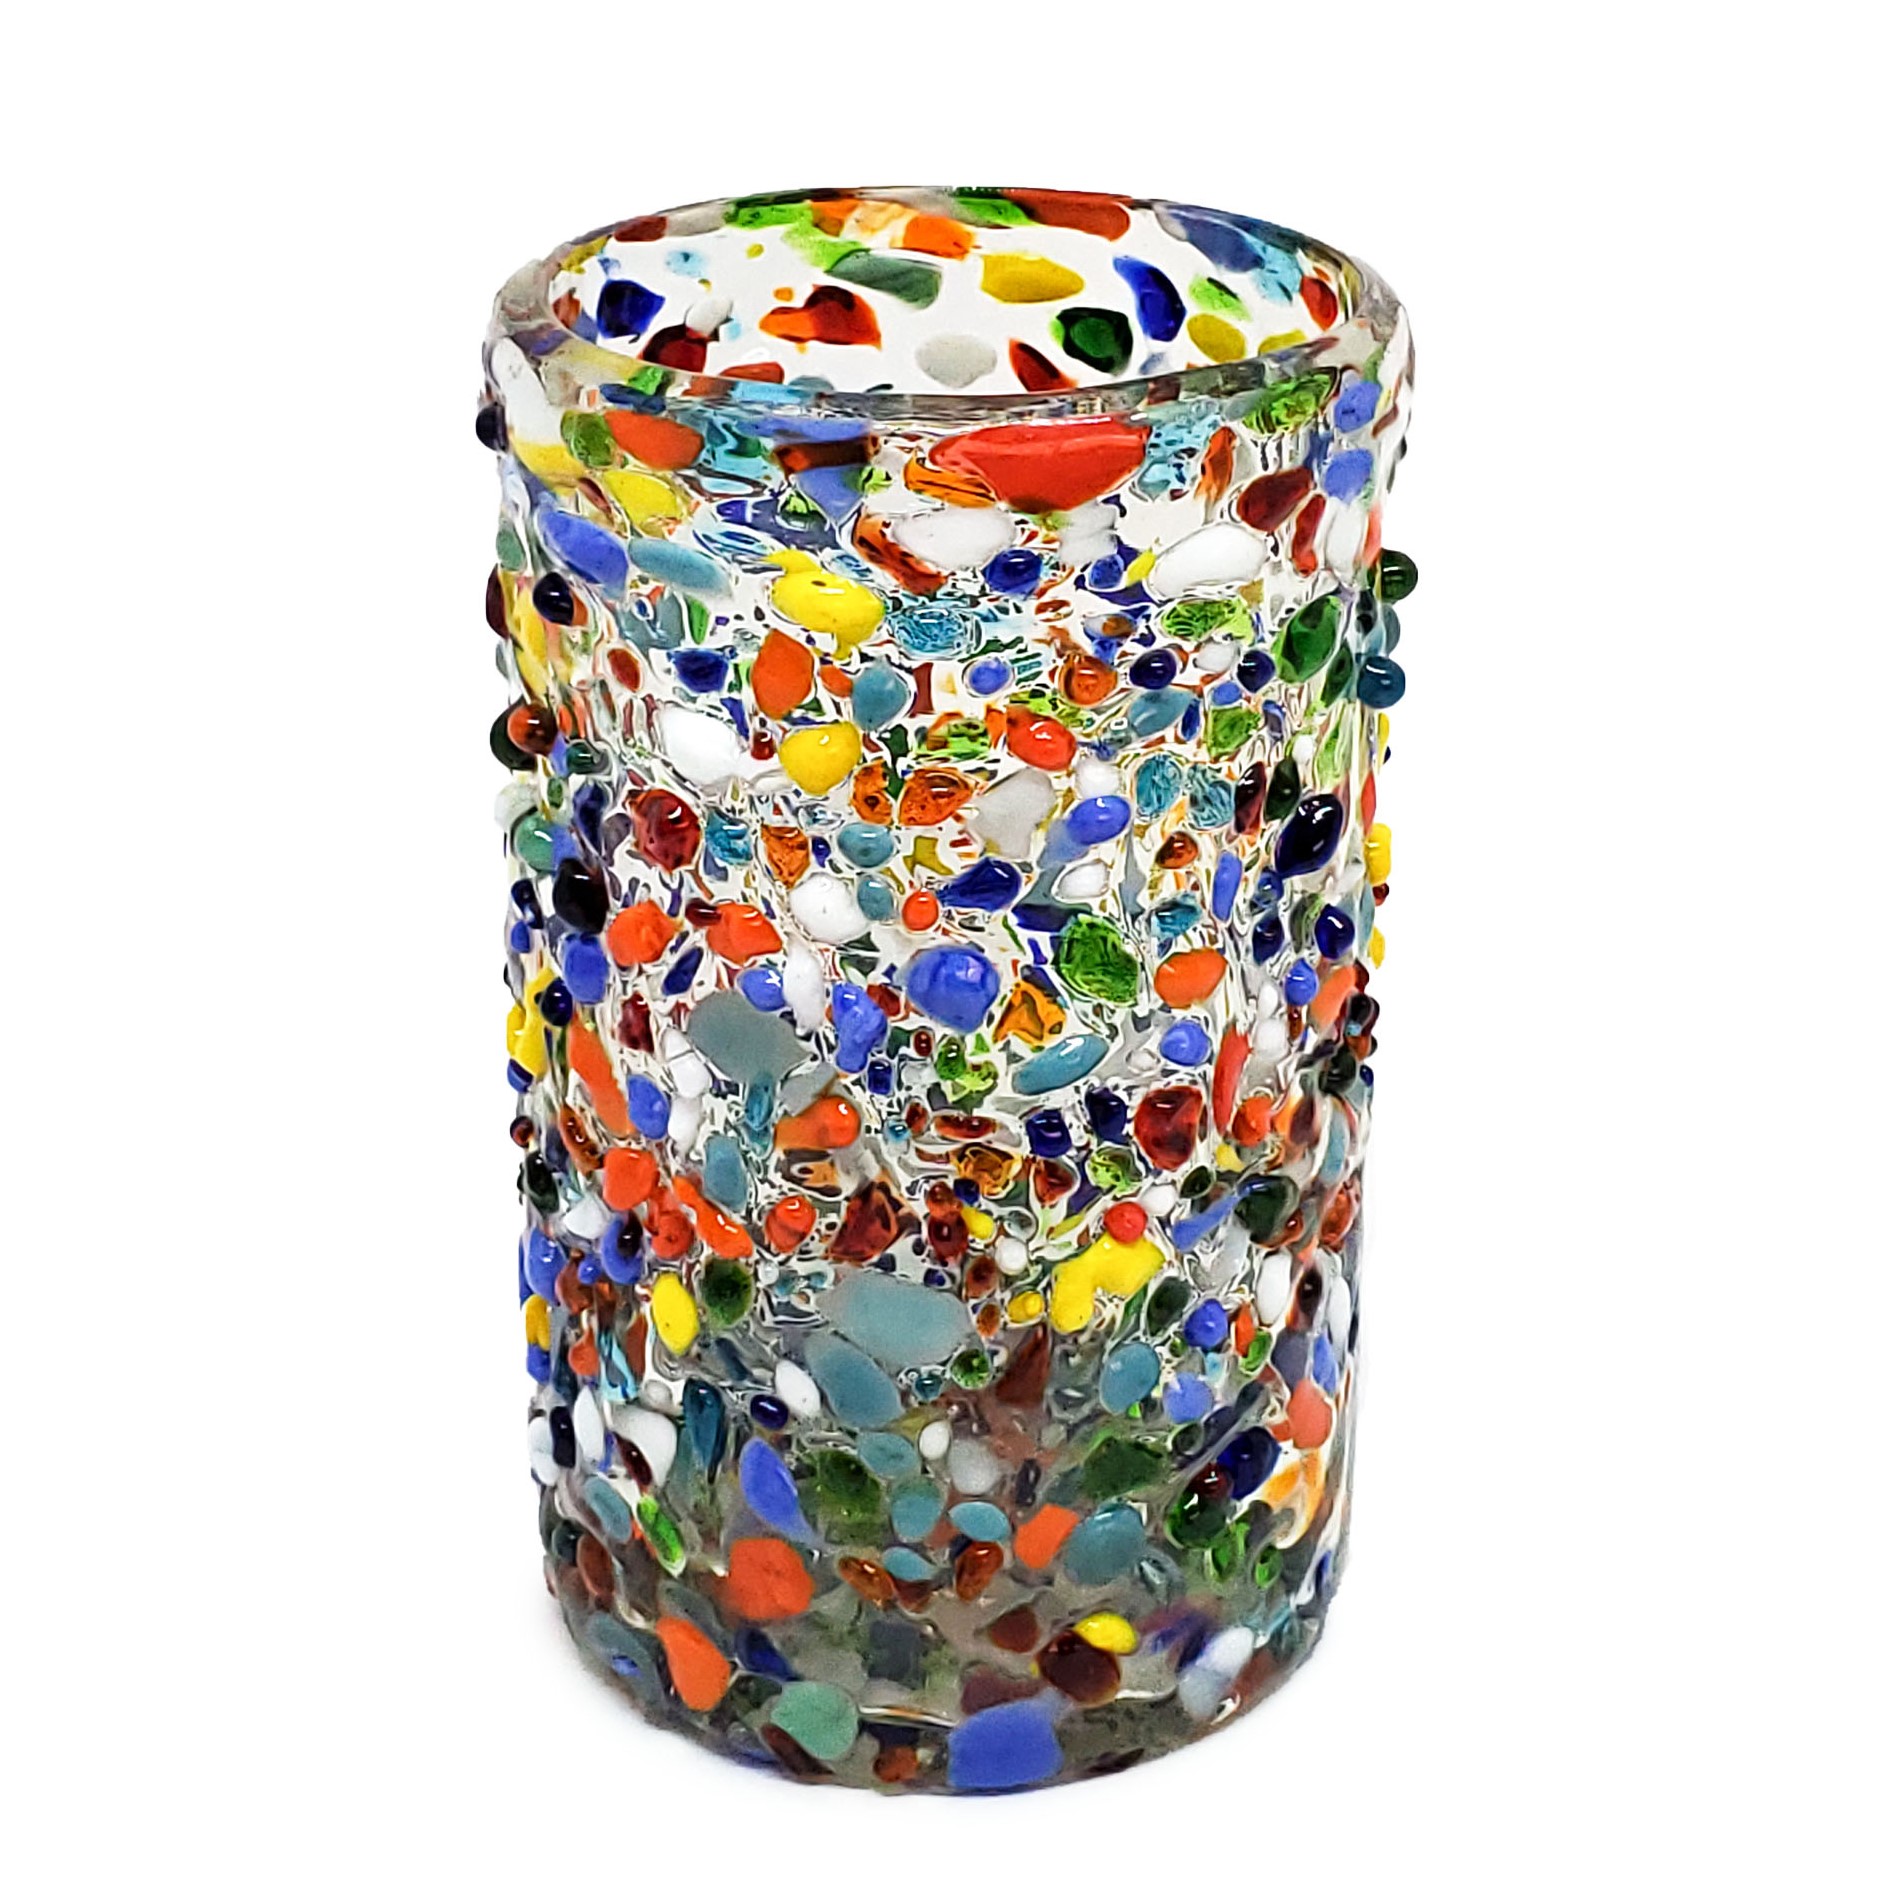 Vasos de Vidrio Soplado / Juego de 6 vasos grandes 'Confeti granizado' / Deje entrar a la primavera en su casa con éste colorido juego de vasos. El decorado con vidrio multicolor los hace resaltar en cualquier lugar.